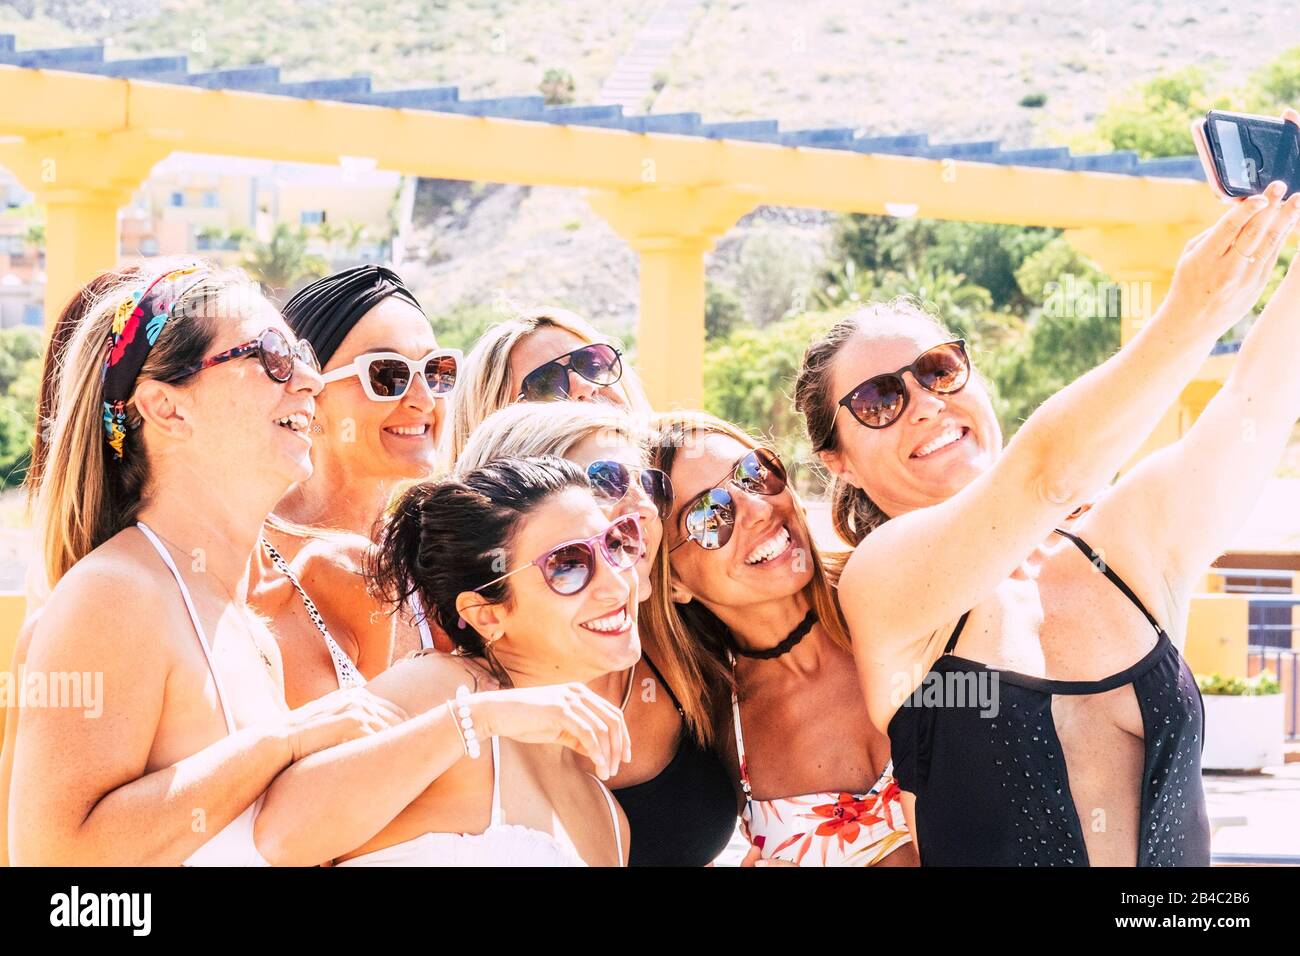 Menschen Frauen Freunde haben Spaß zusammen lächeln und lachen ein selfie-bild mit einem Smartphone machen alle zusammen - Konzept von Freunden und Sommer mit Freuden und Hapiness für Damen Stockfoto